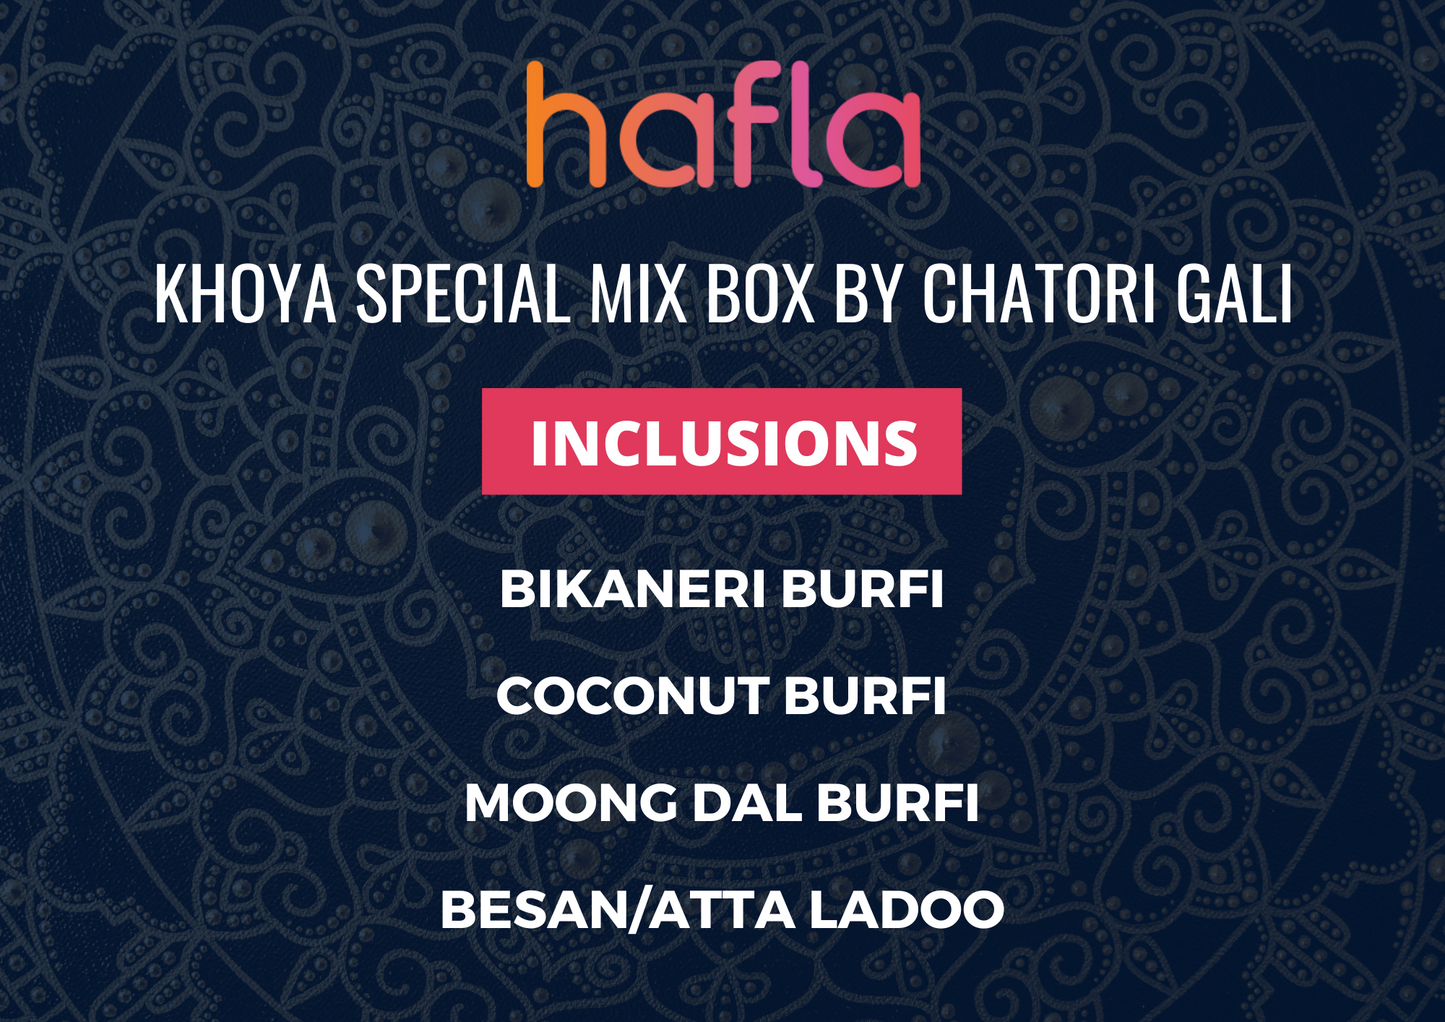 Khoya Special Mix Box by Chatori Gali